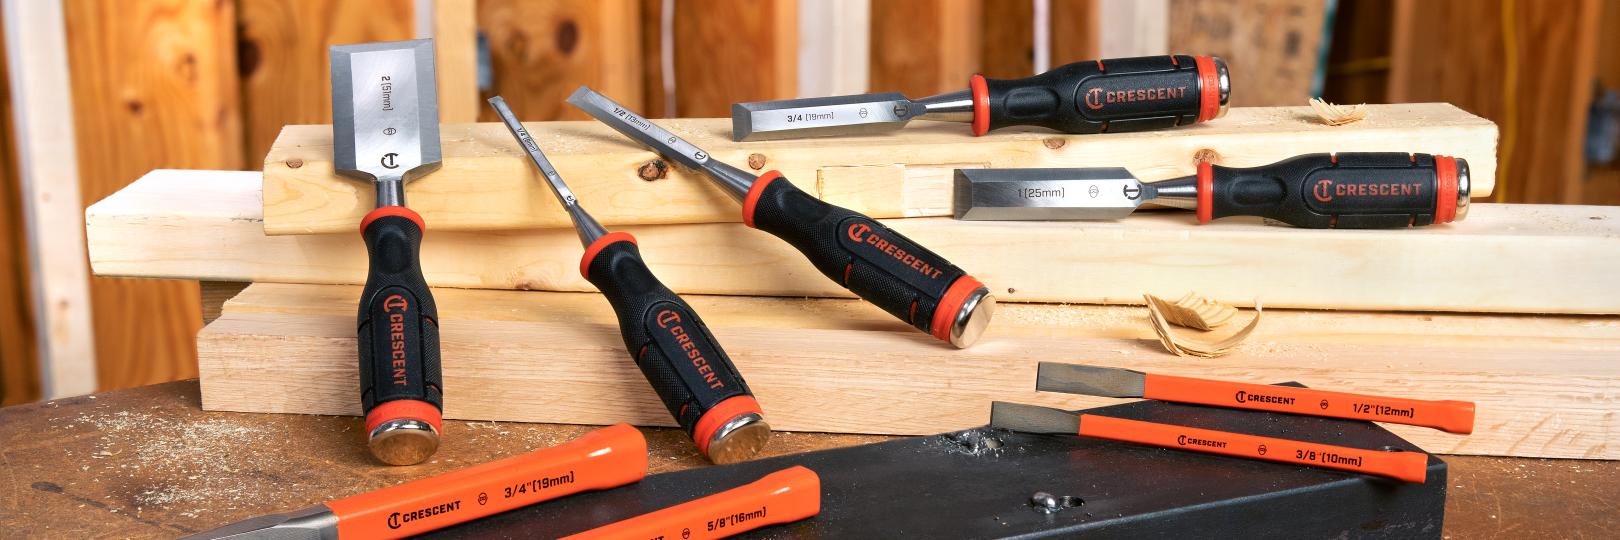 Bar set / 17 essential tools for your home bar set